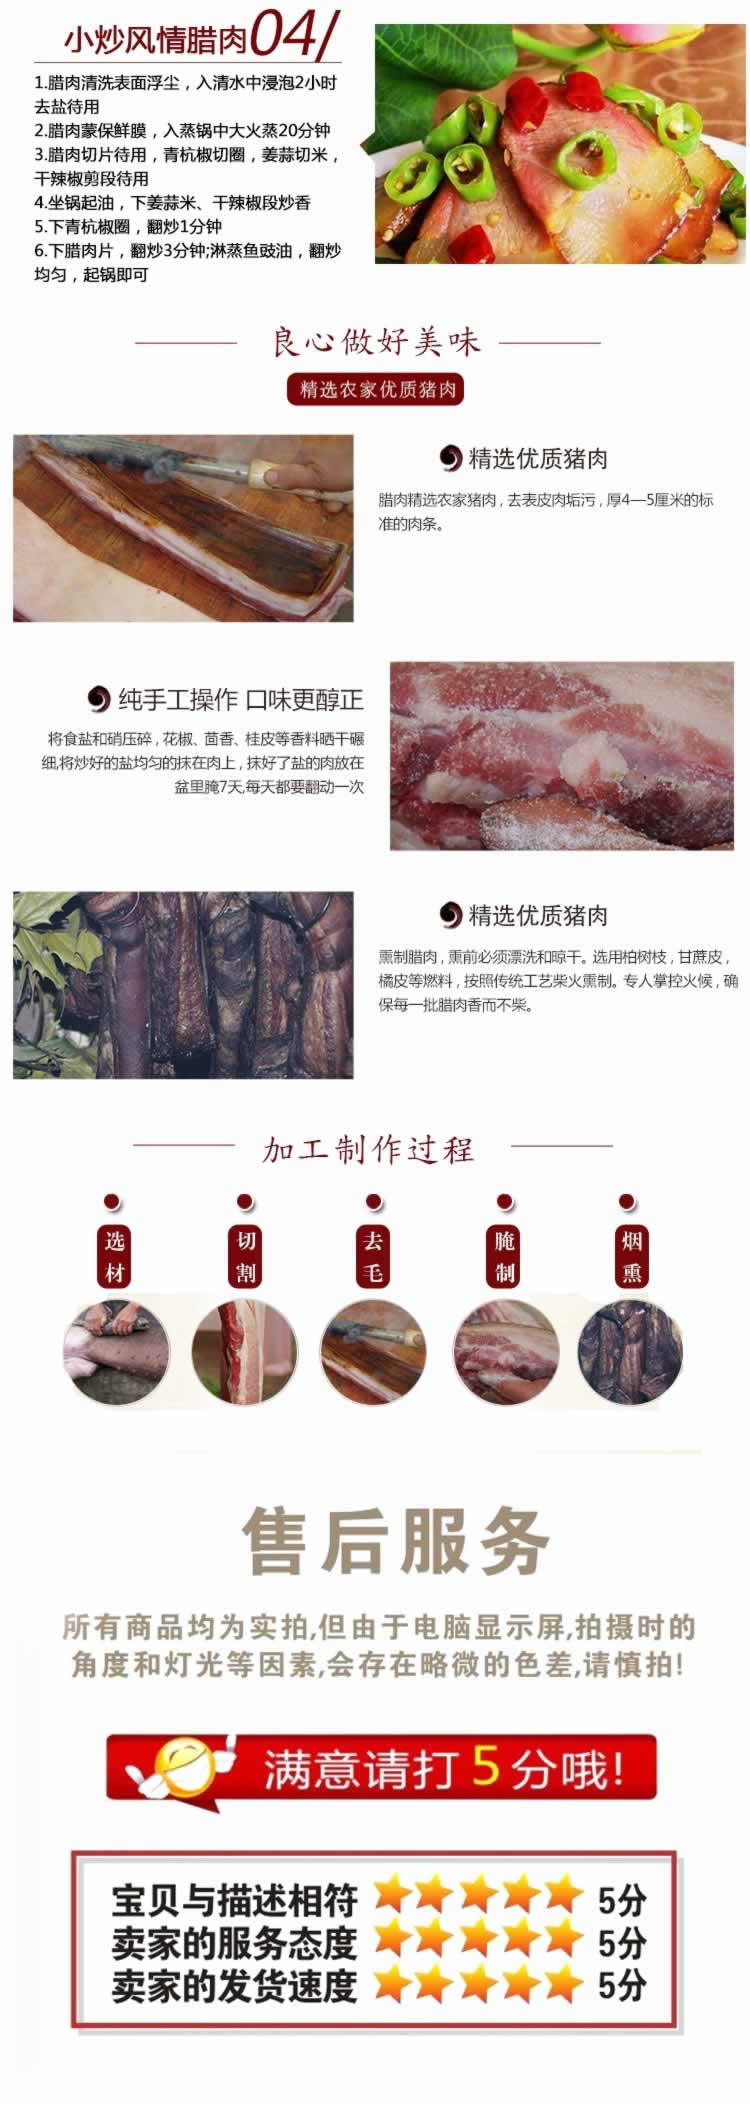 土猪肉贵州腊肉农村老腊肉农特产描述